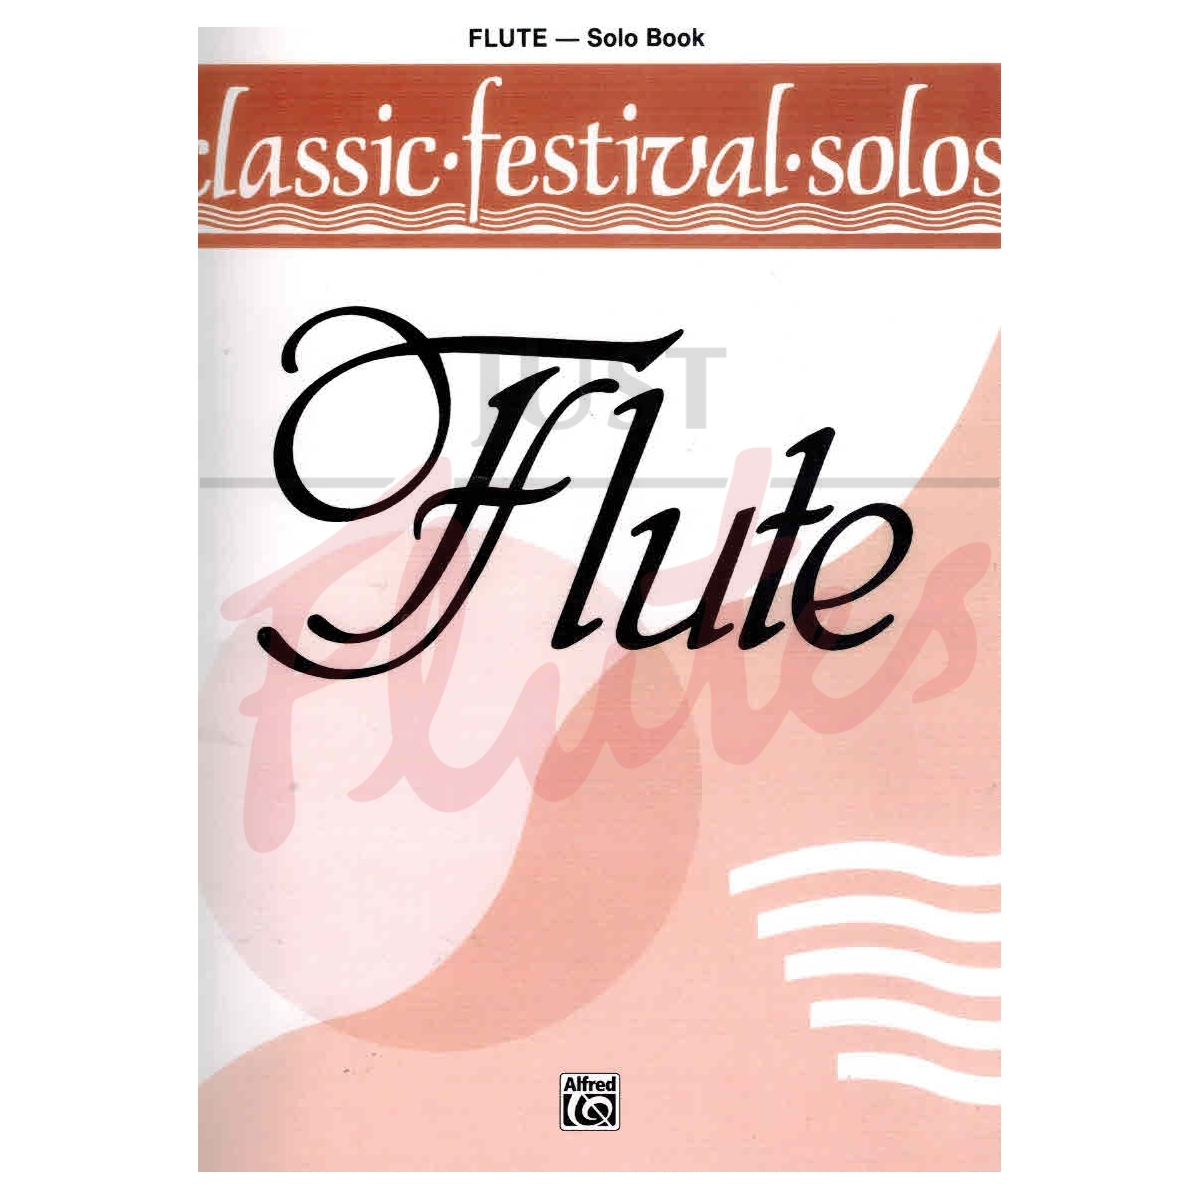 Classic Festival Solos [Flute Part]